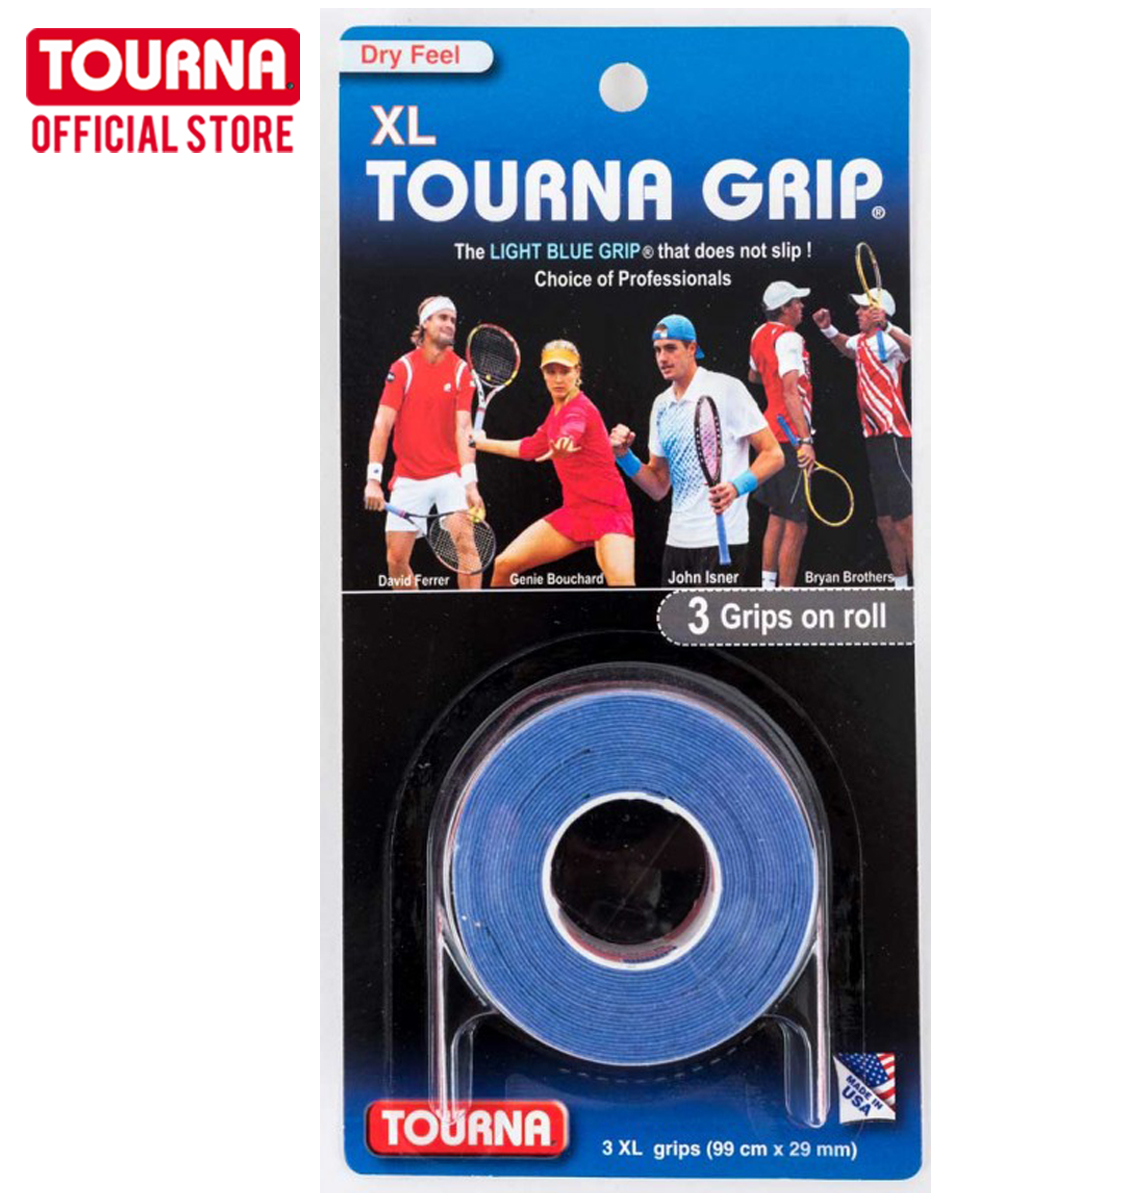 TOURNA GRIP กริปพันด้ามเทนนิสและแบด แบบแห้ง Blue-3 XL grips on roll   TG-1-XL Tennis & Badminton